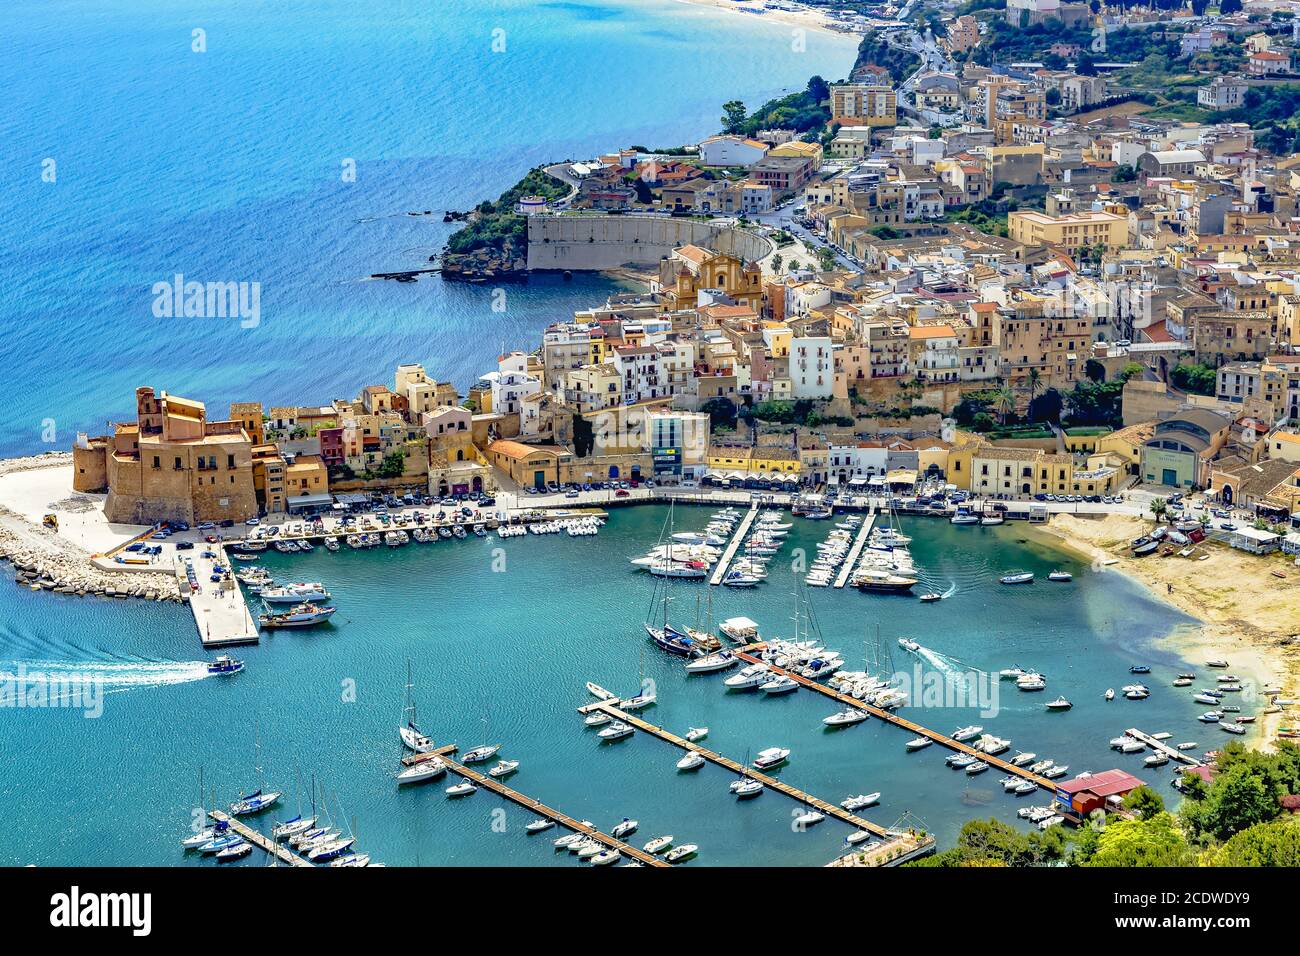 The port city of Castellammare del Golfo near Palermo in Sicily Stock ...